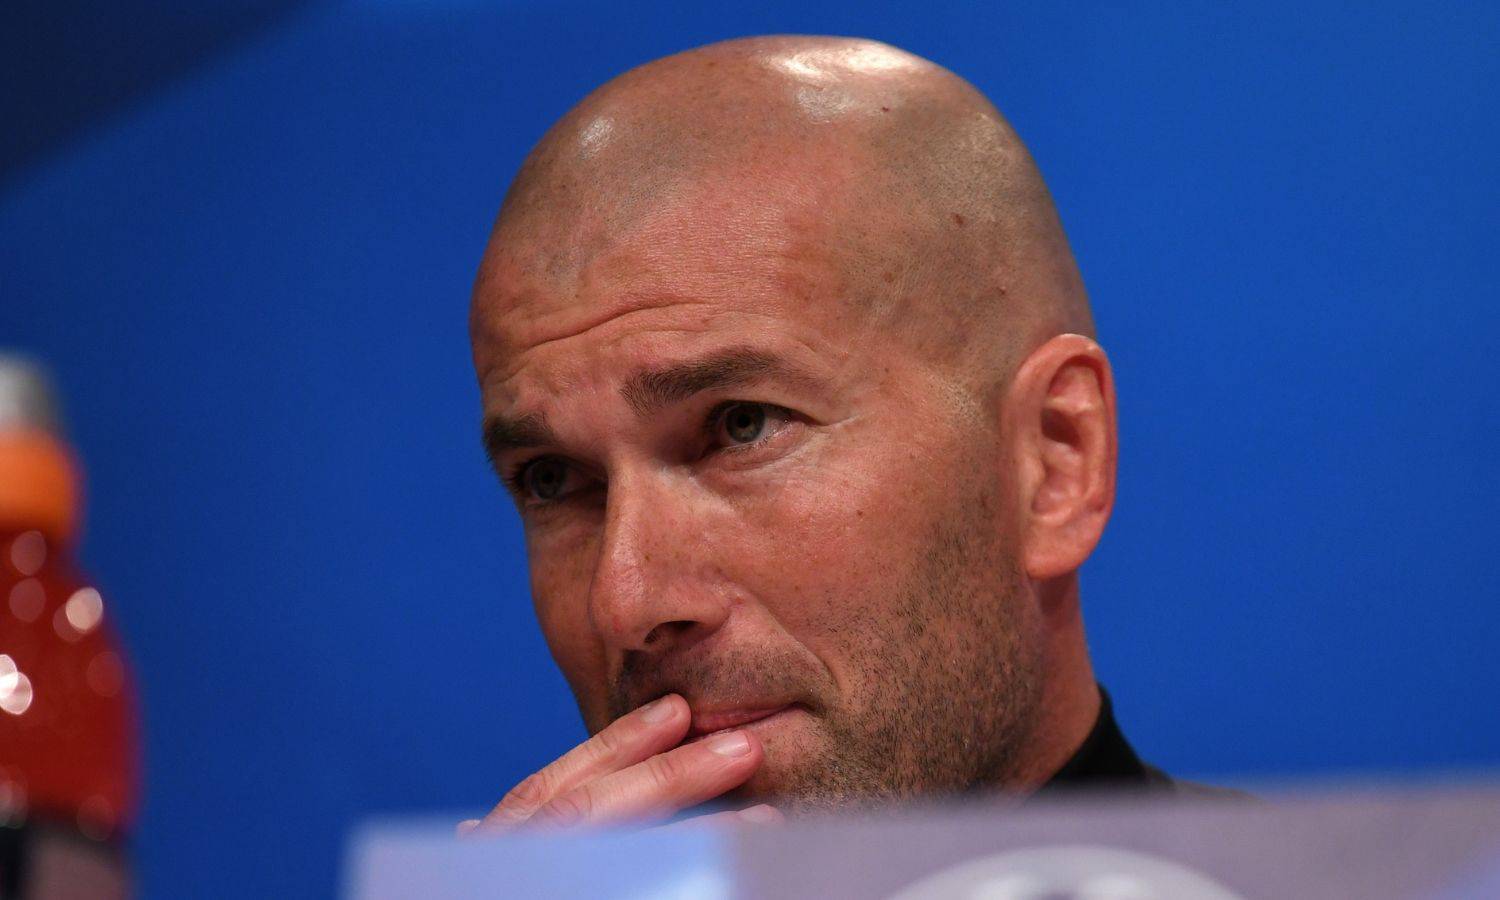 Zidane otputovao da vidi brata na samrti: Nije se uspio izvući